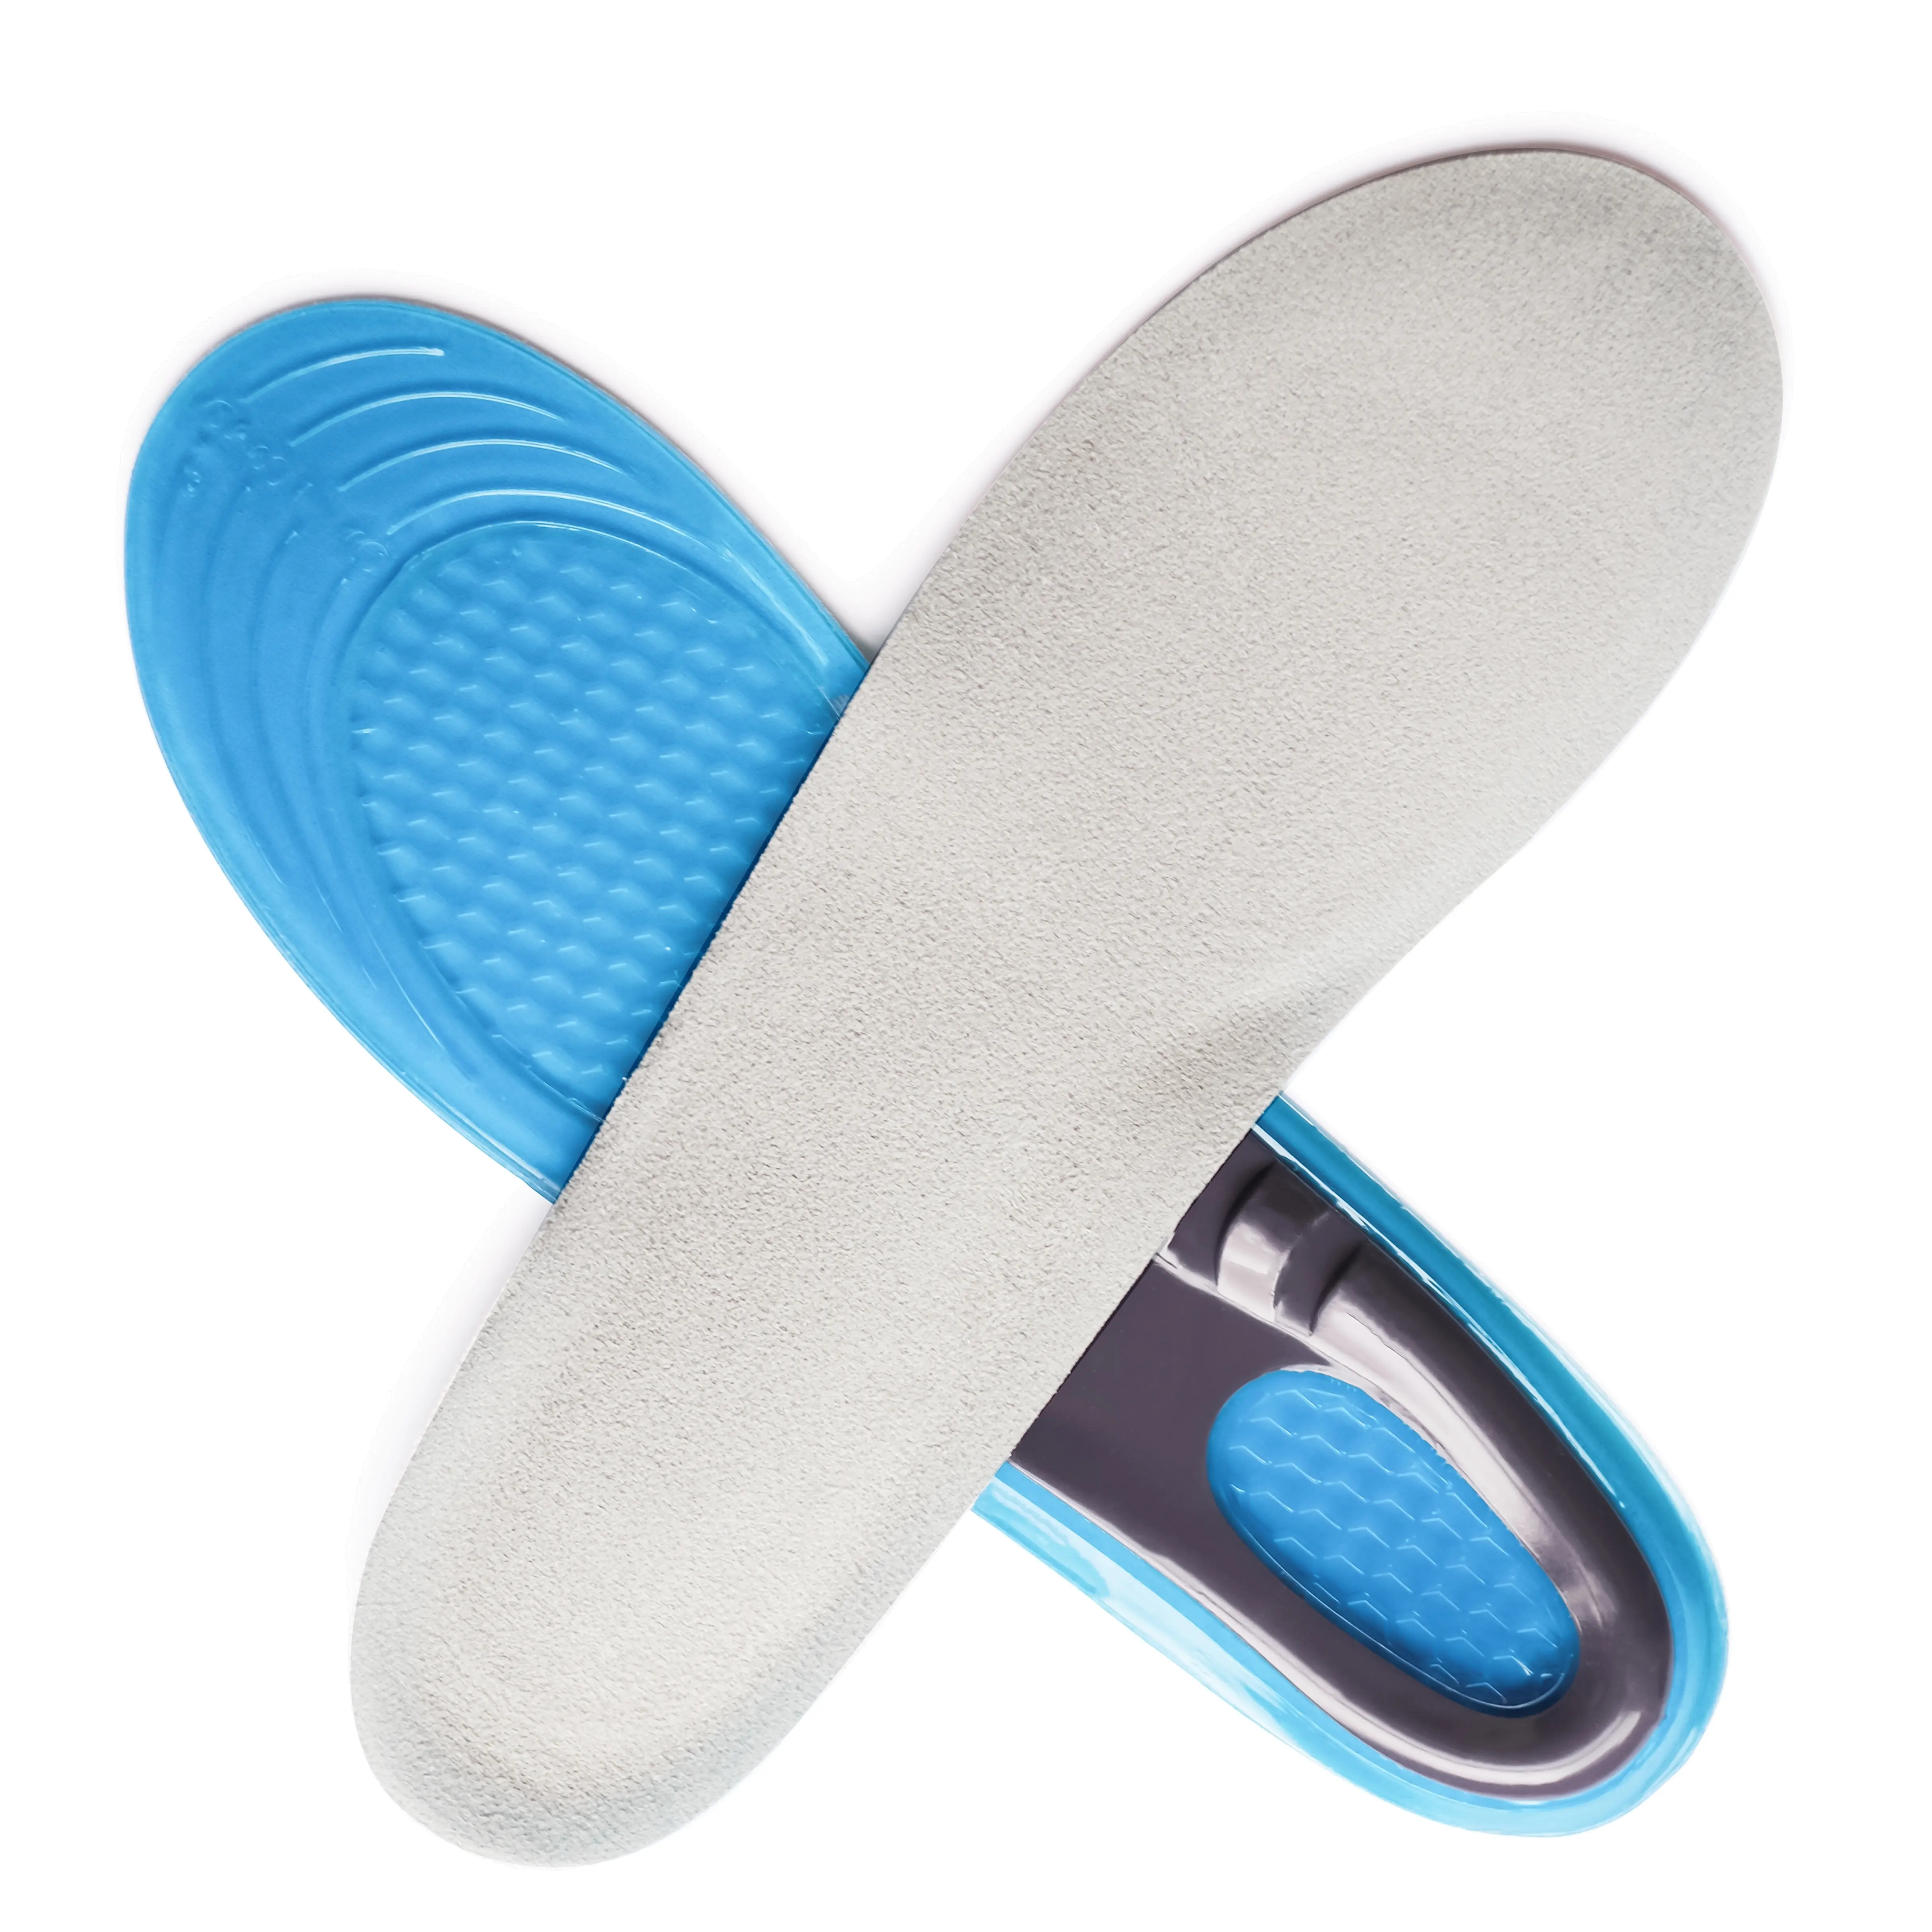 Silikon kaymaz jel spor ayakkabı tabanlık yumuşak TPE ortez ayak pedleri masaj etkisi ile diğer tabanlık